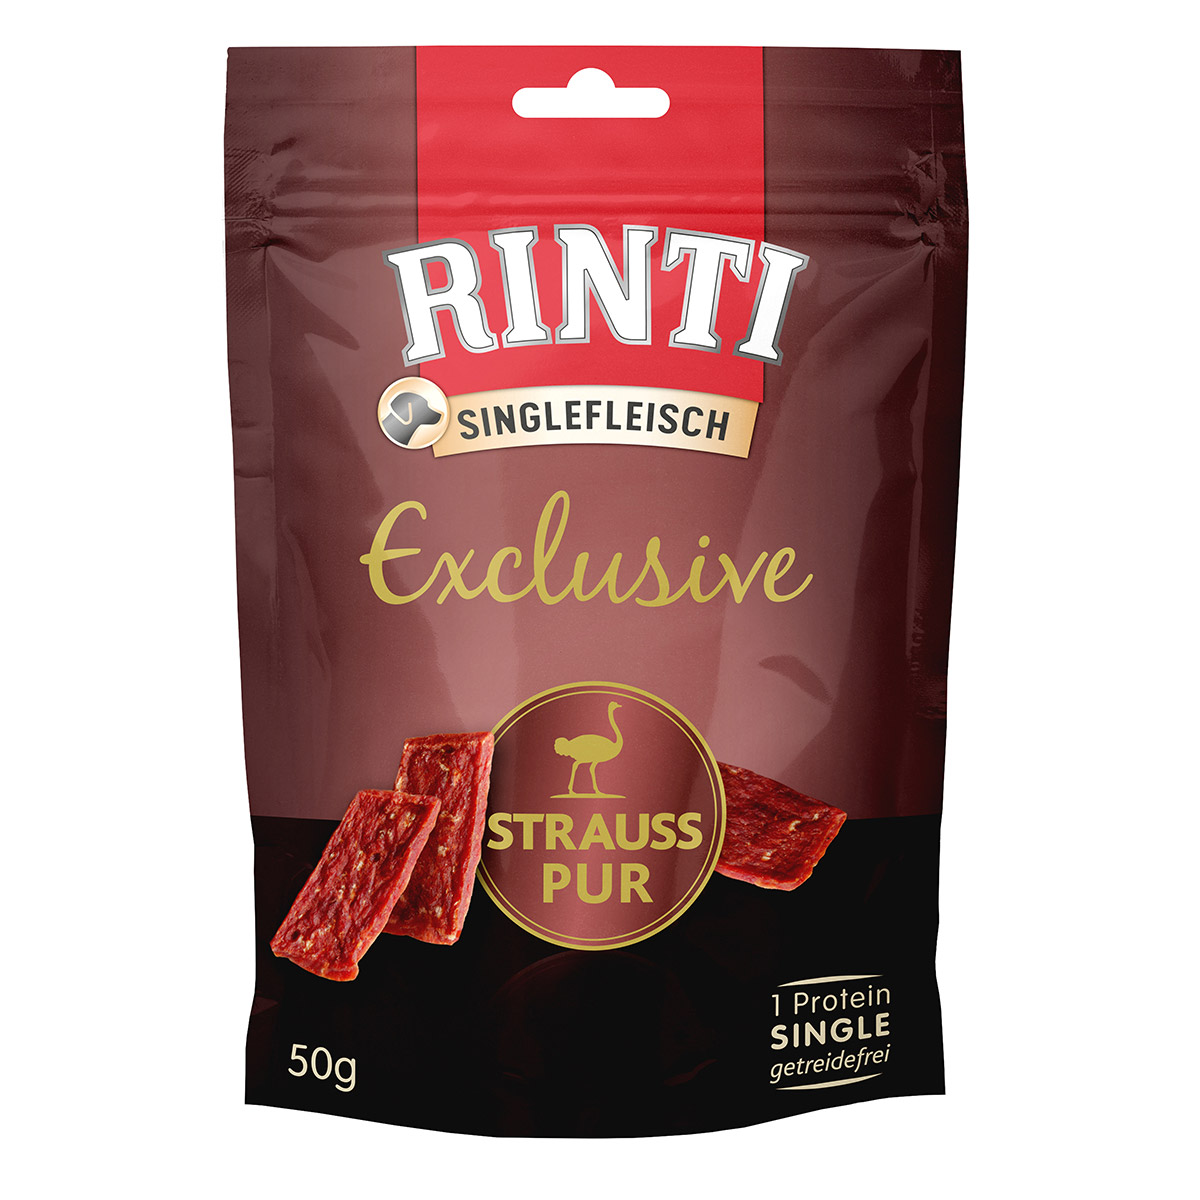 rinti singlefleisch exclusive snack strauss pur 50g